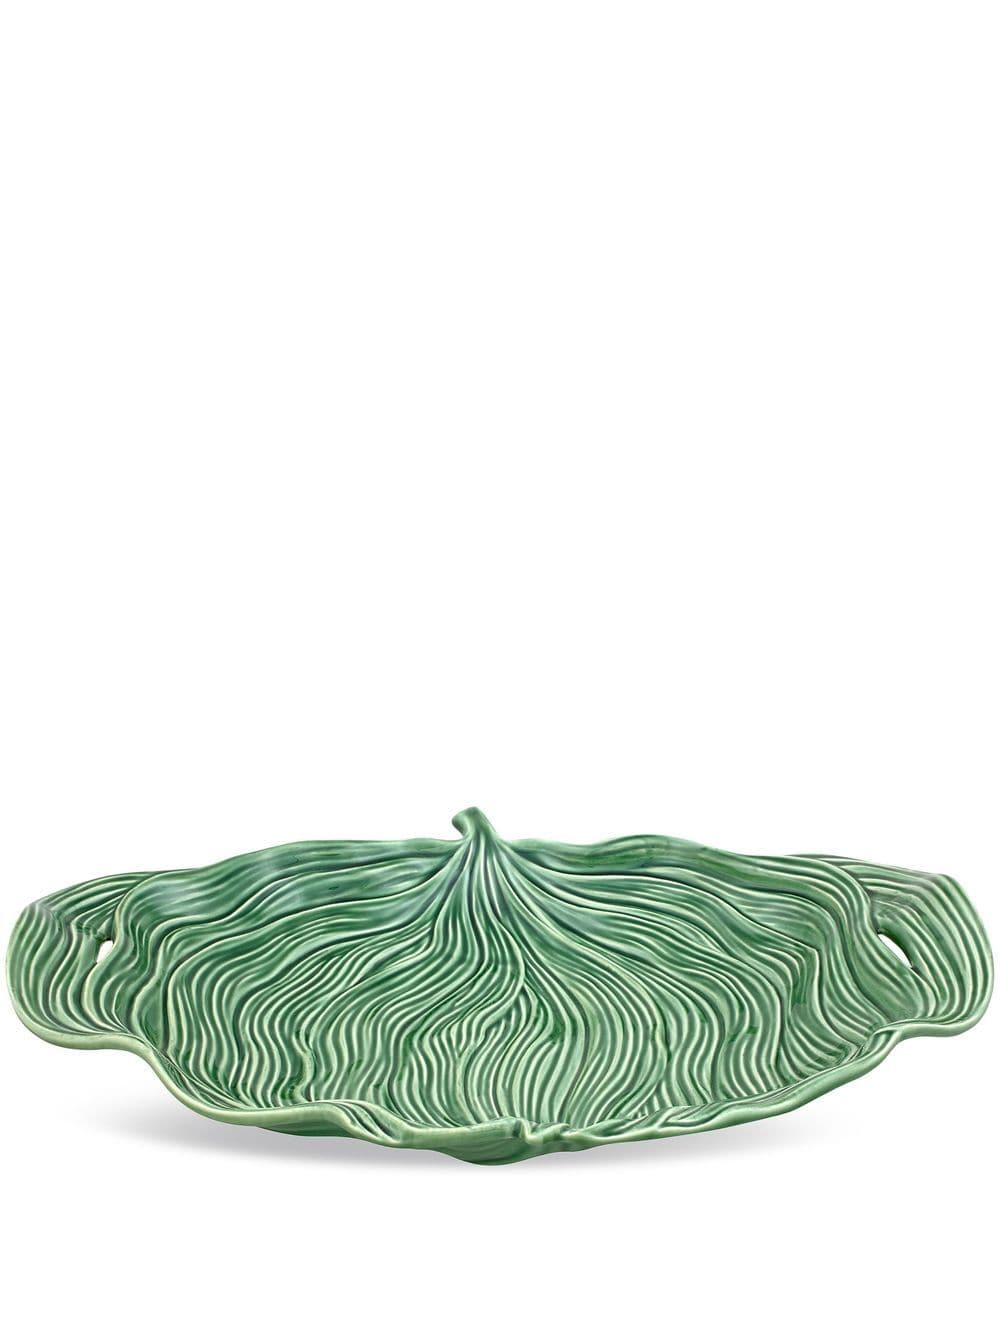 Bordallo Pinheiro 'Folhas' striped platter - Green von Bordallo Pinheiro